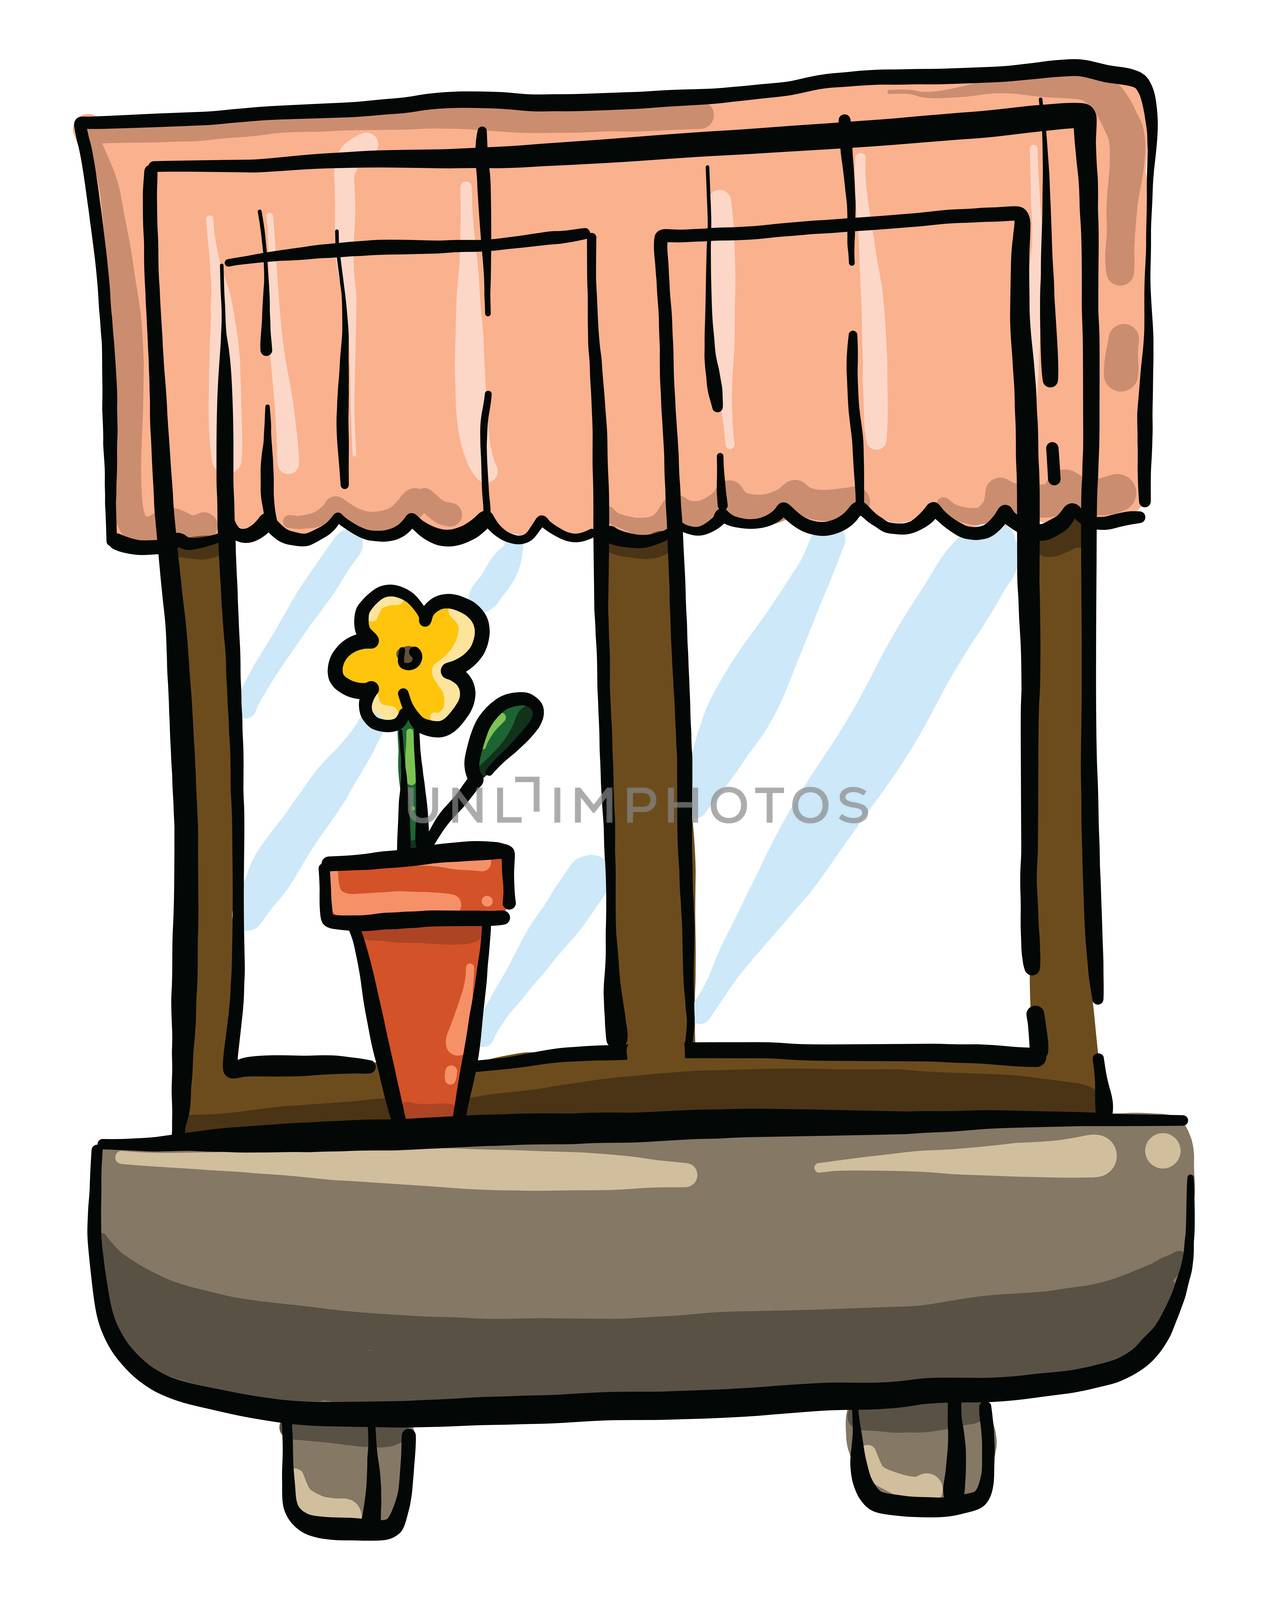 Window with flower in vase , illustration, vector on white backg by Morphart